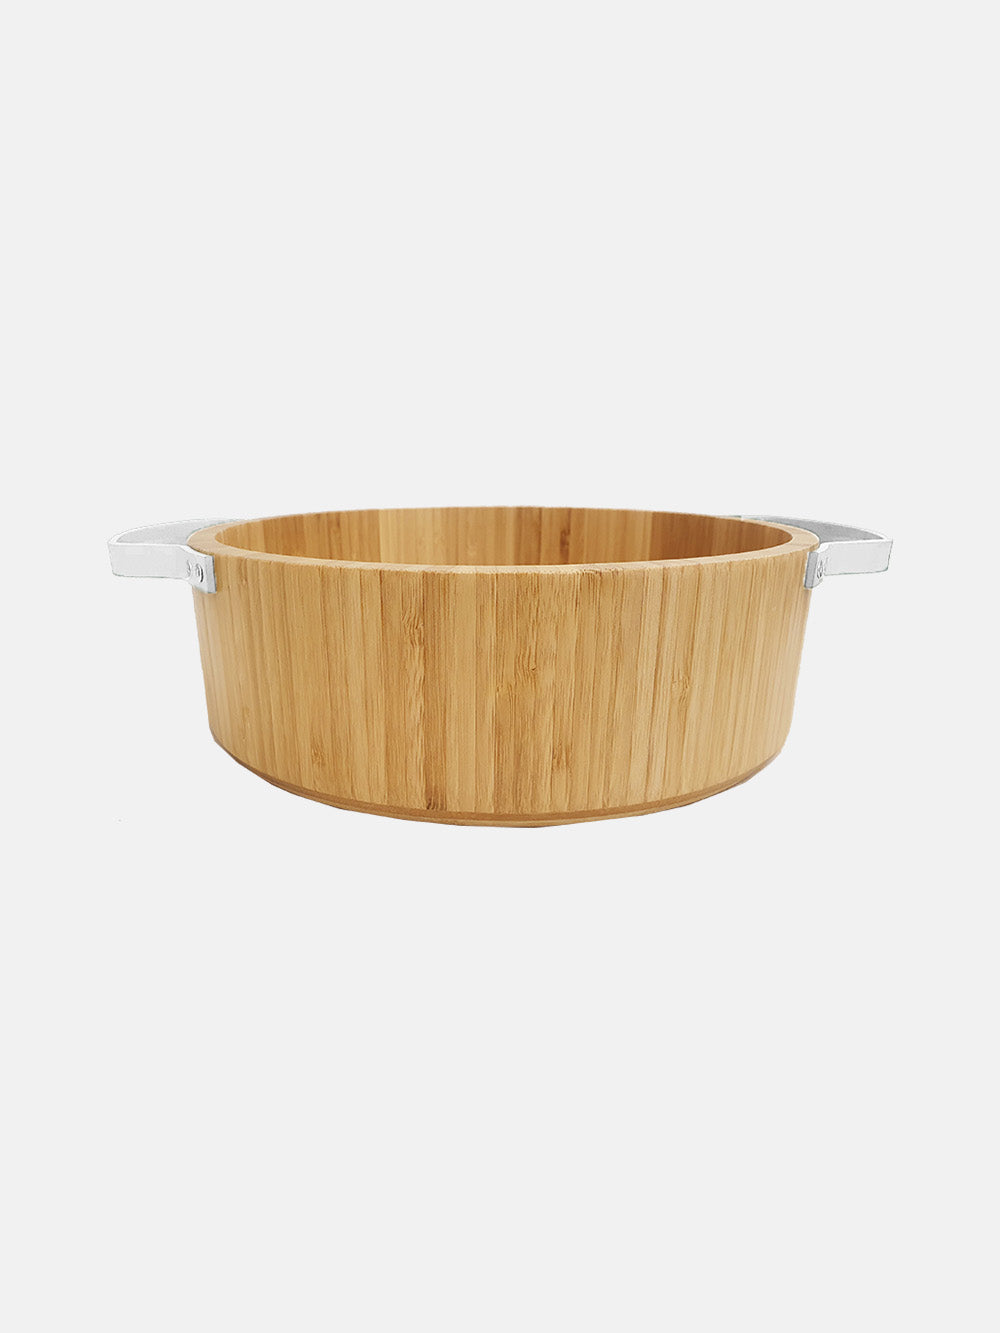 Kav wooden serving bowl